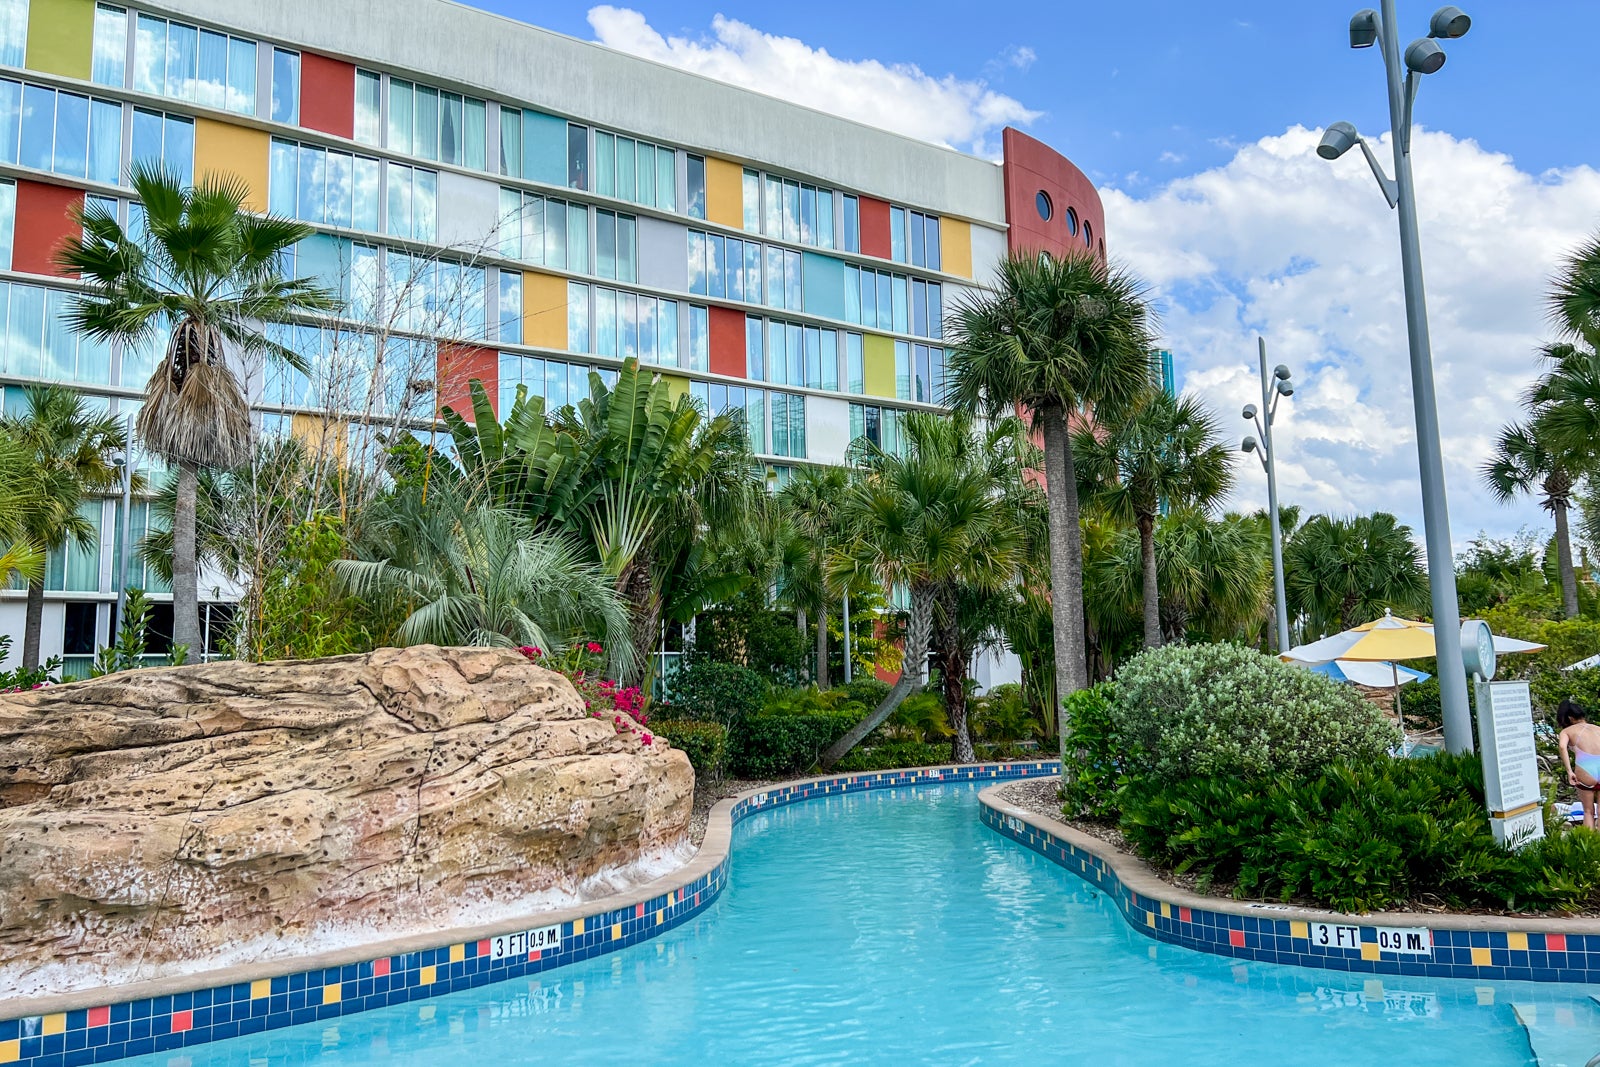 Universal Orlando Resort's Cabana Bay Beach Resort